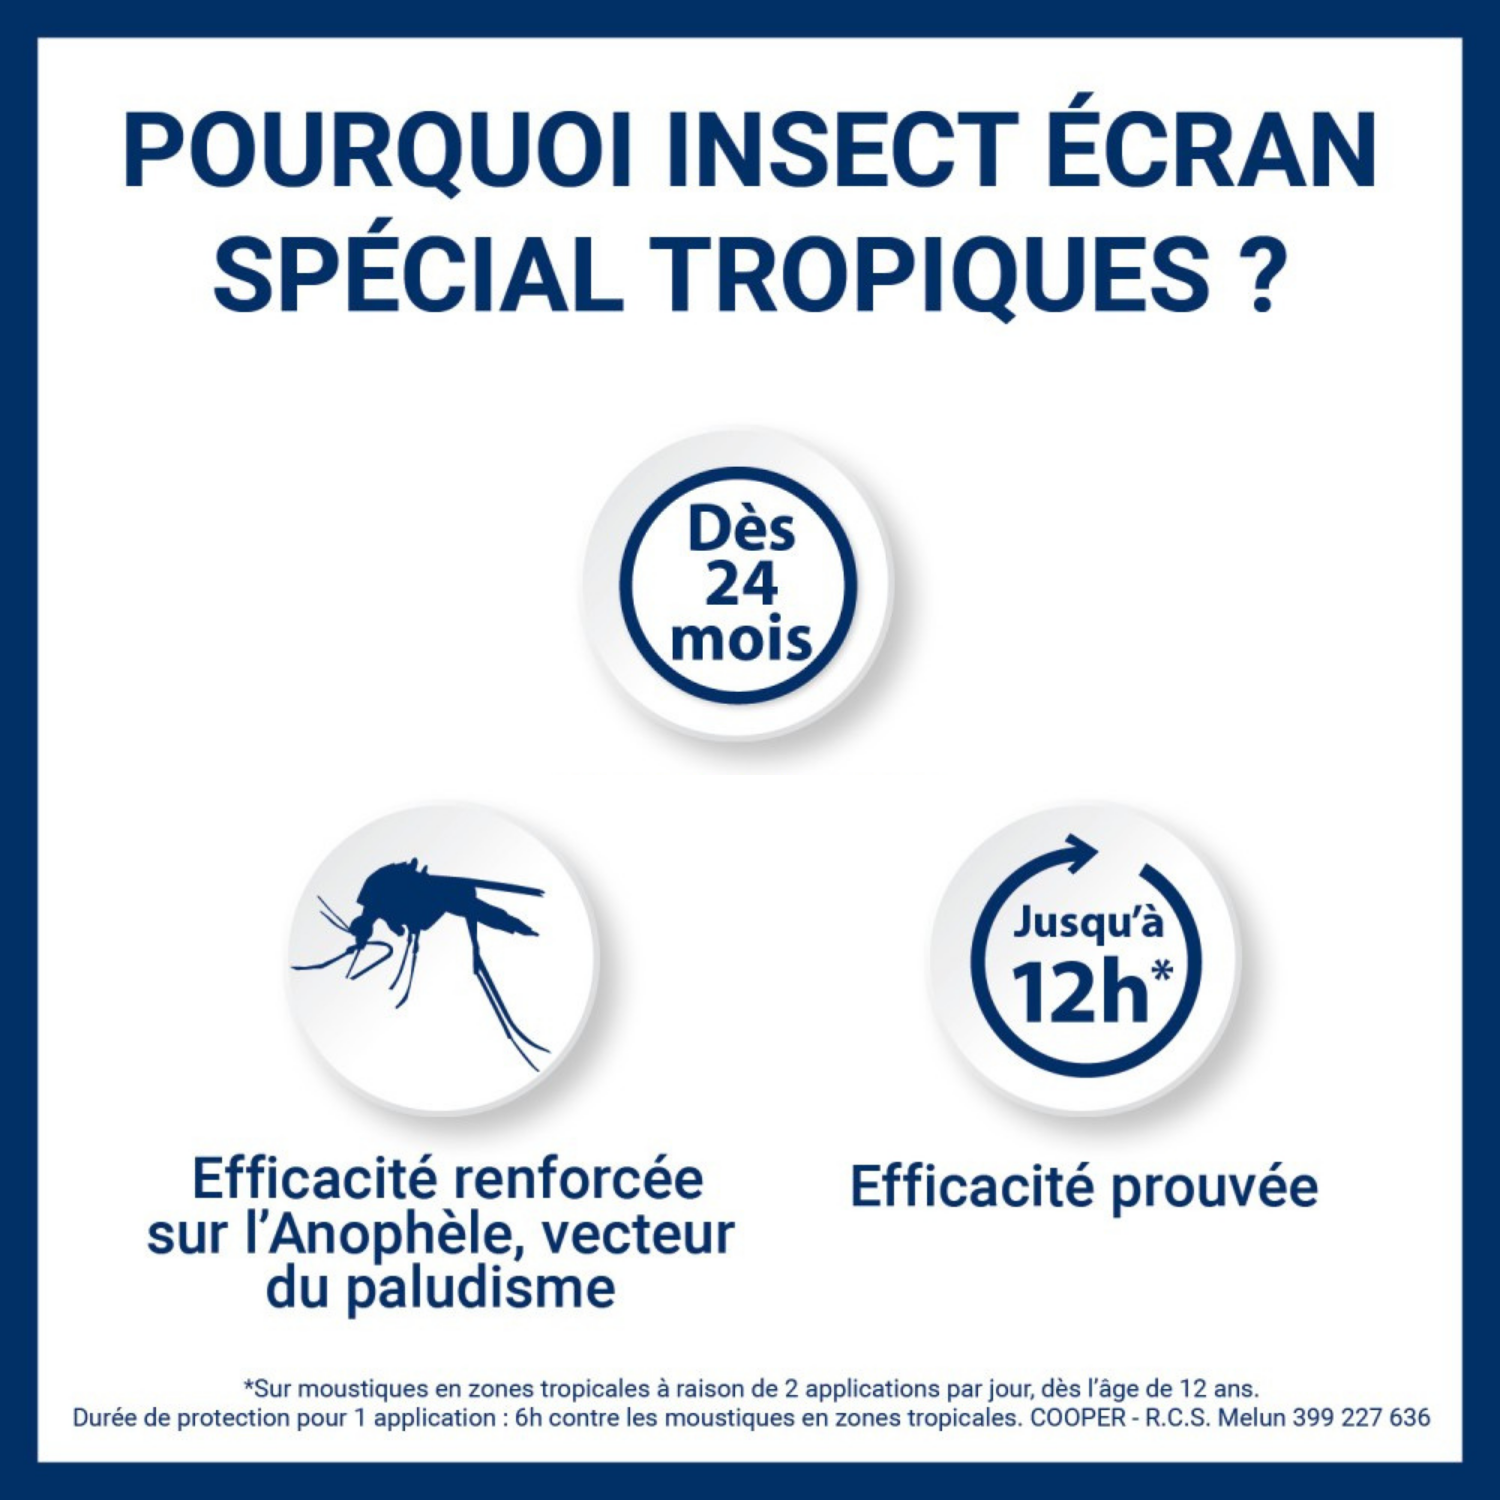 Anti-moustiques Special Tropiques Peau Insect Ecran - Bioax